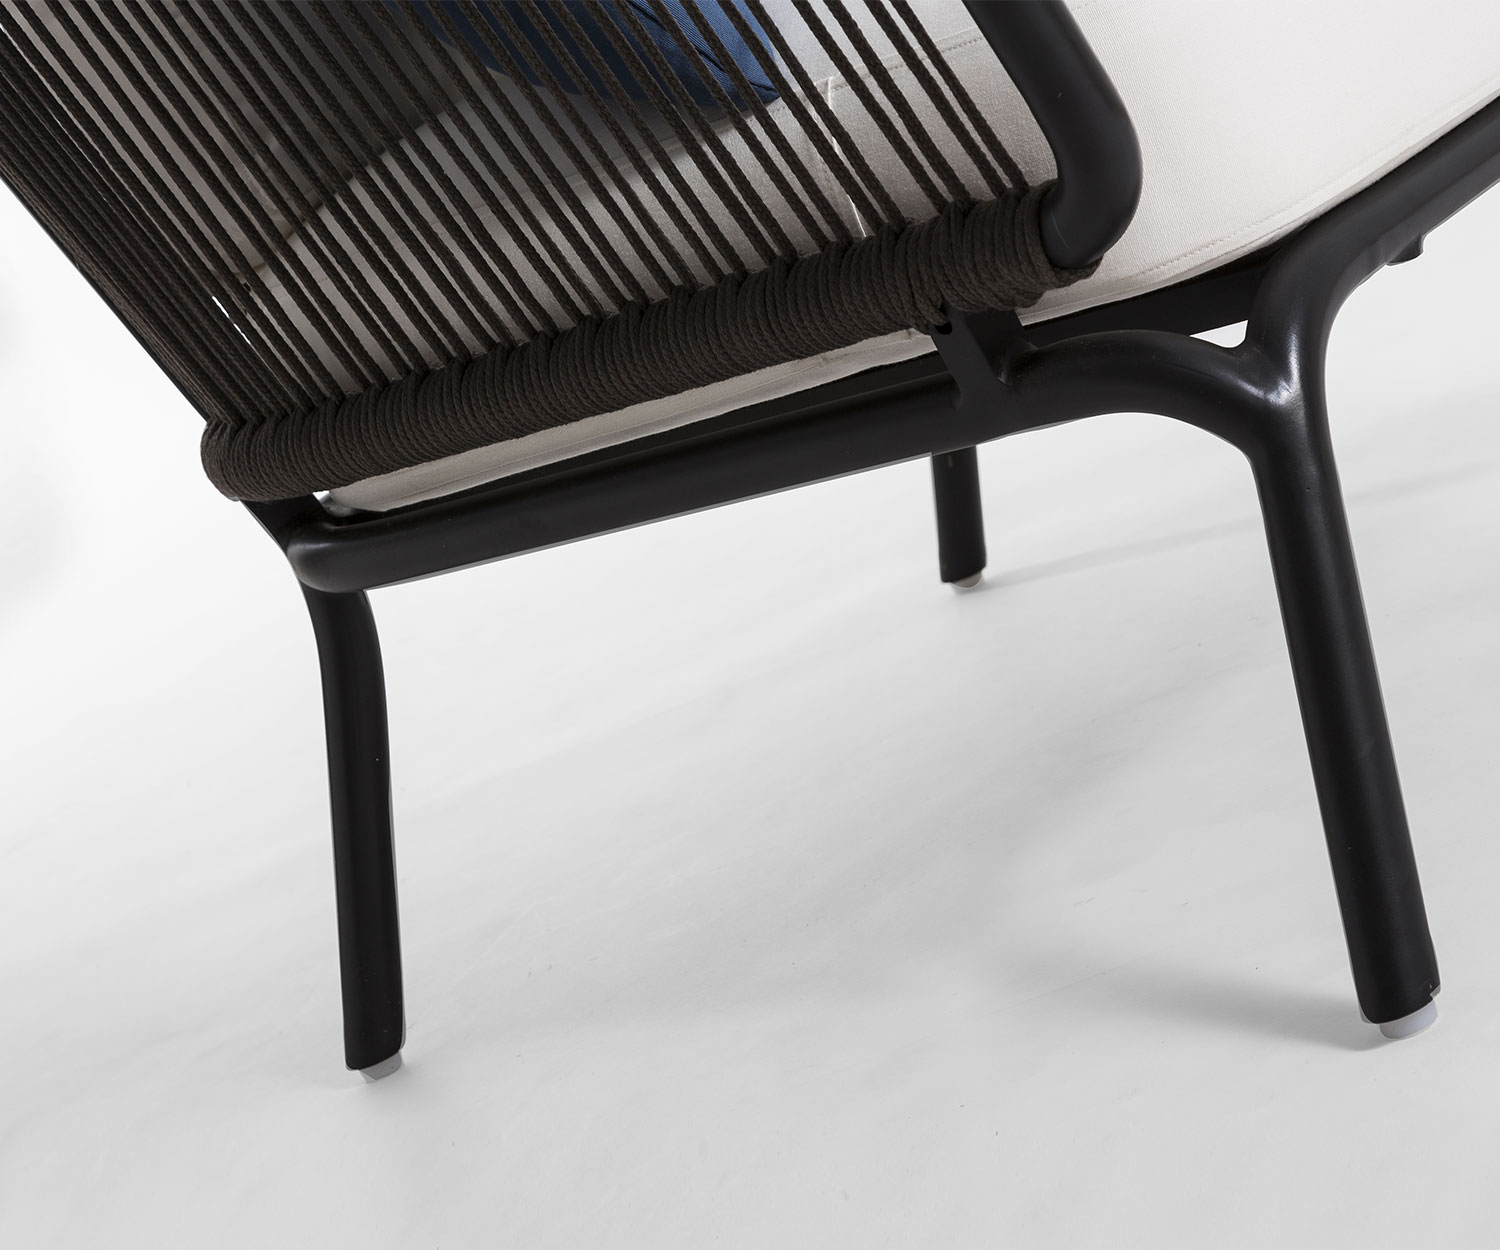 Hoogwaardige Oasiq Yland chaise longue 2-zits designbank met gedetailleerde poten en bekleding